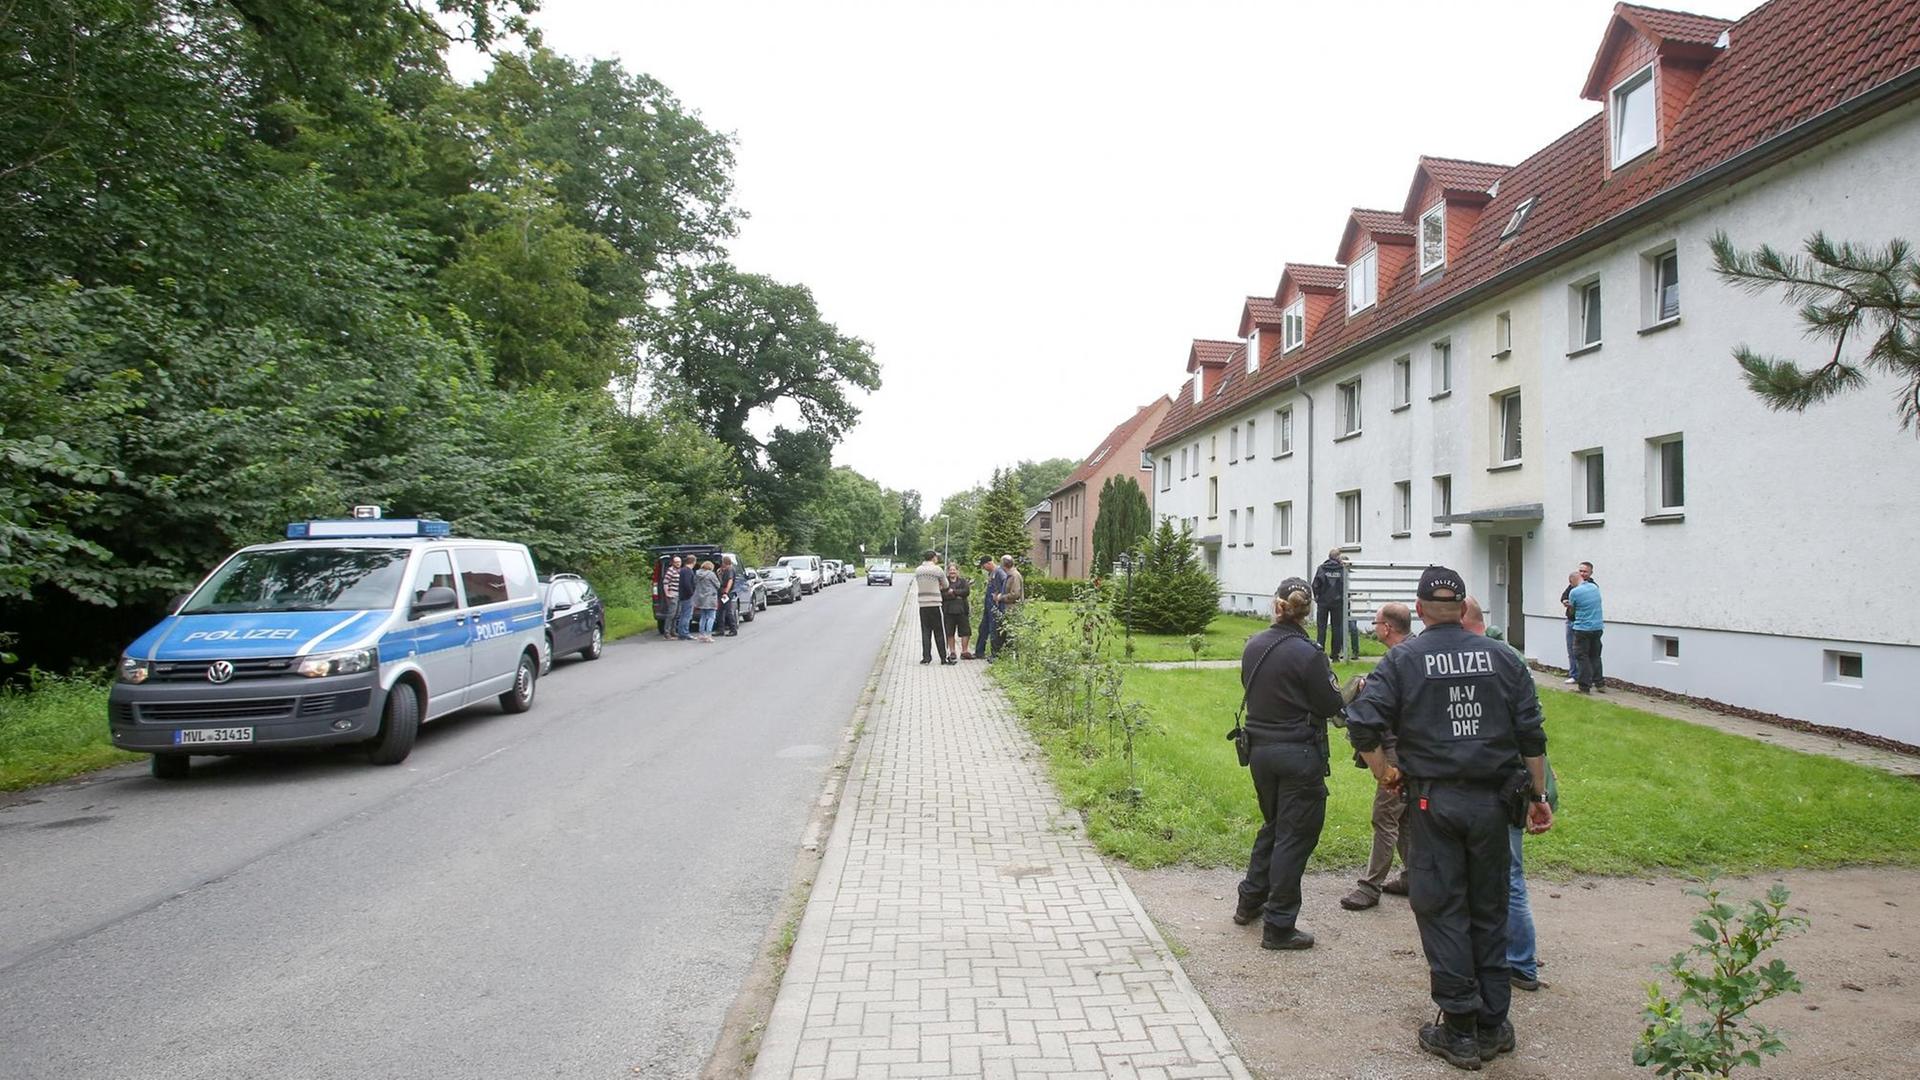 Einsatzkräfte der Polizei stehen vor einem Mehrfamilienhaus in Boldebuck bei Güstrow in Mecklenburg-Vorpommern.